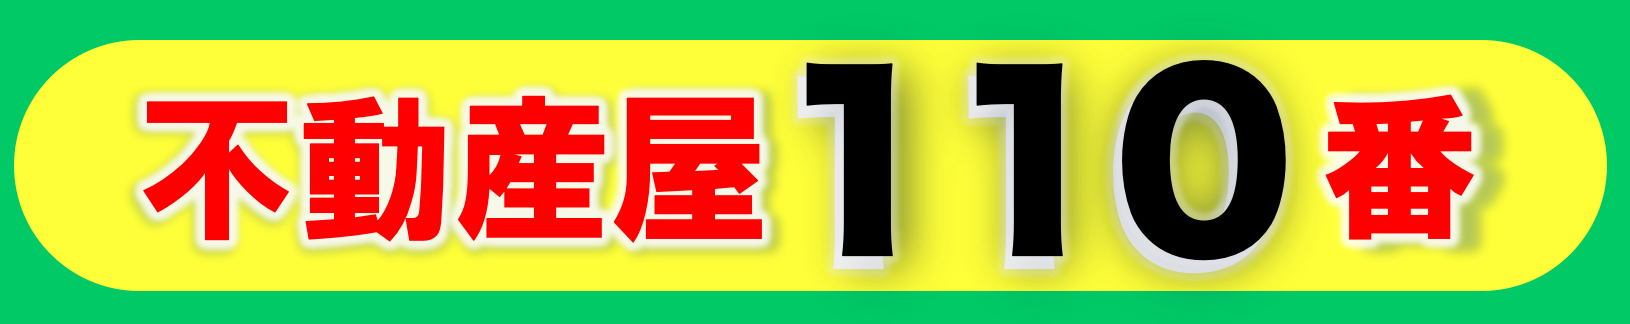 畑 - 不動産110番 石垣店